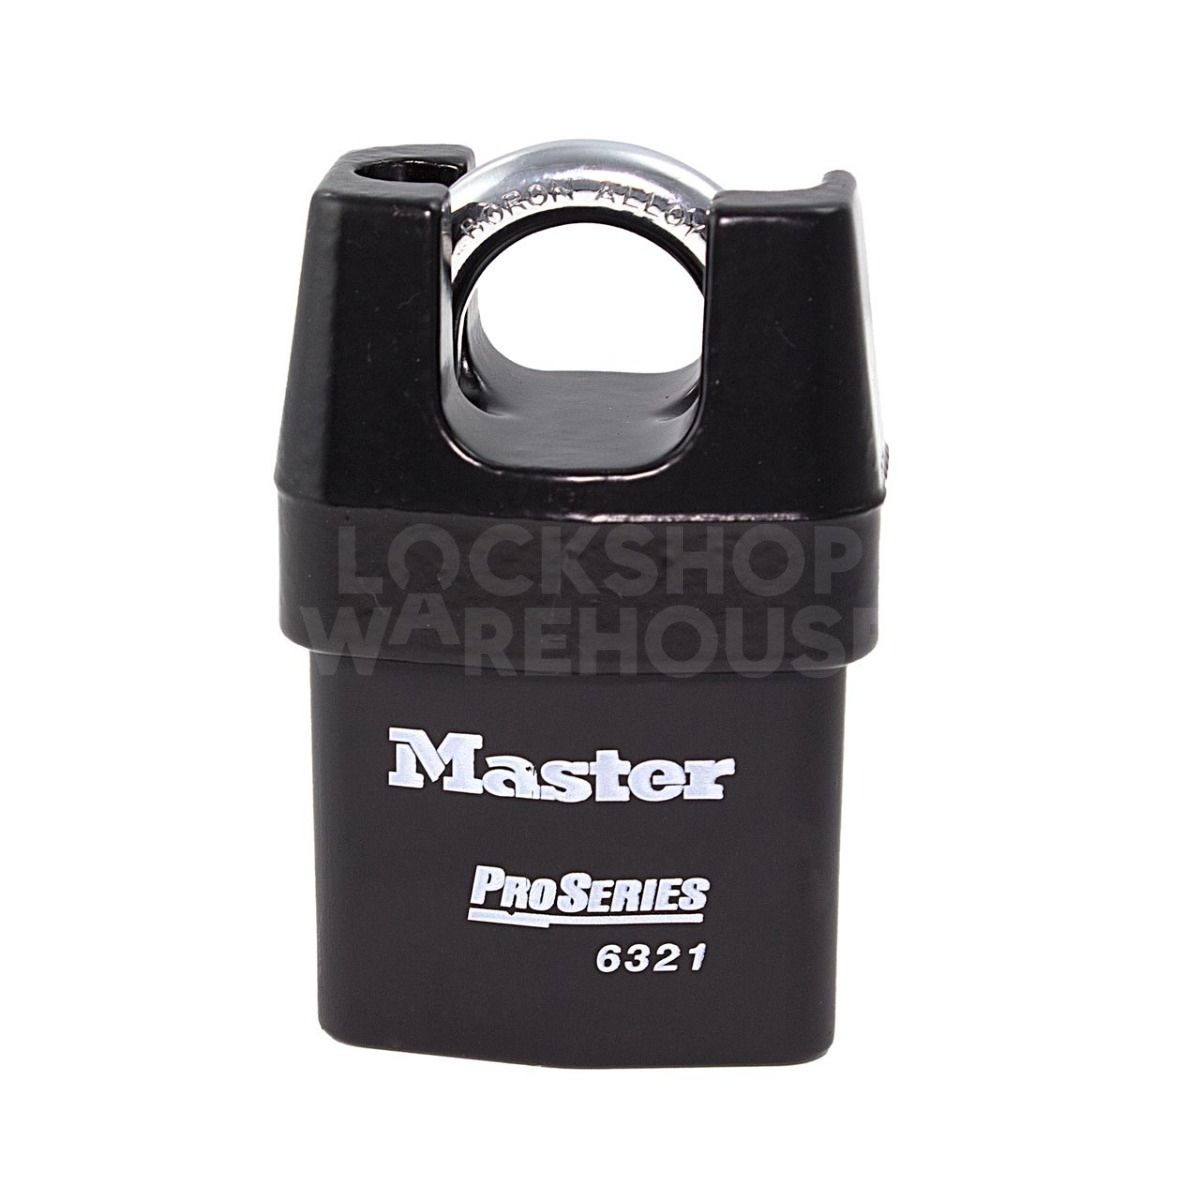 Master ProSeries 6321 Shrouded Shackle Padlock